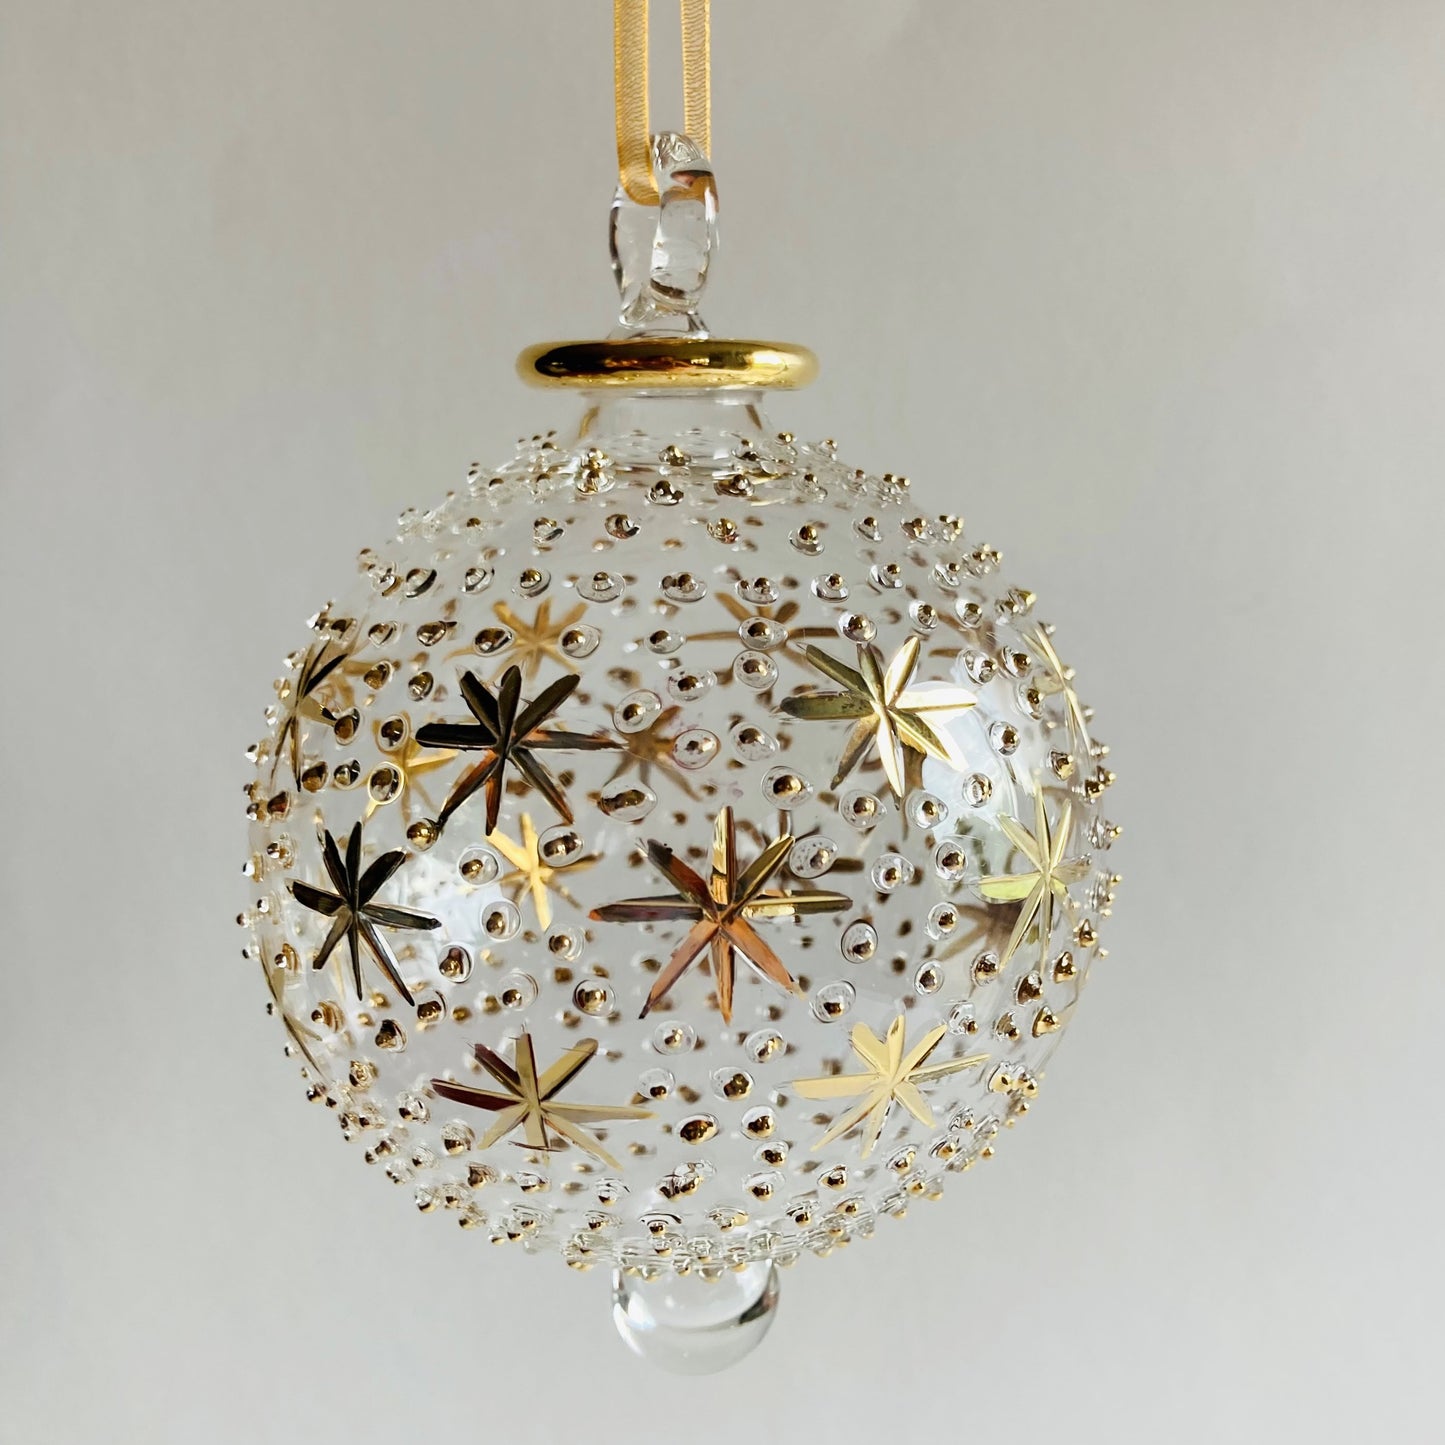 Blown Glass Ornament - Gold Stars & Dots